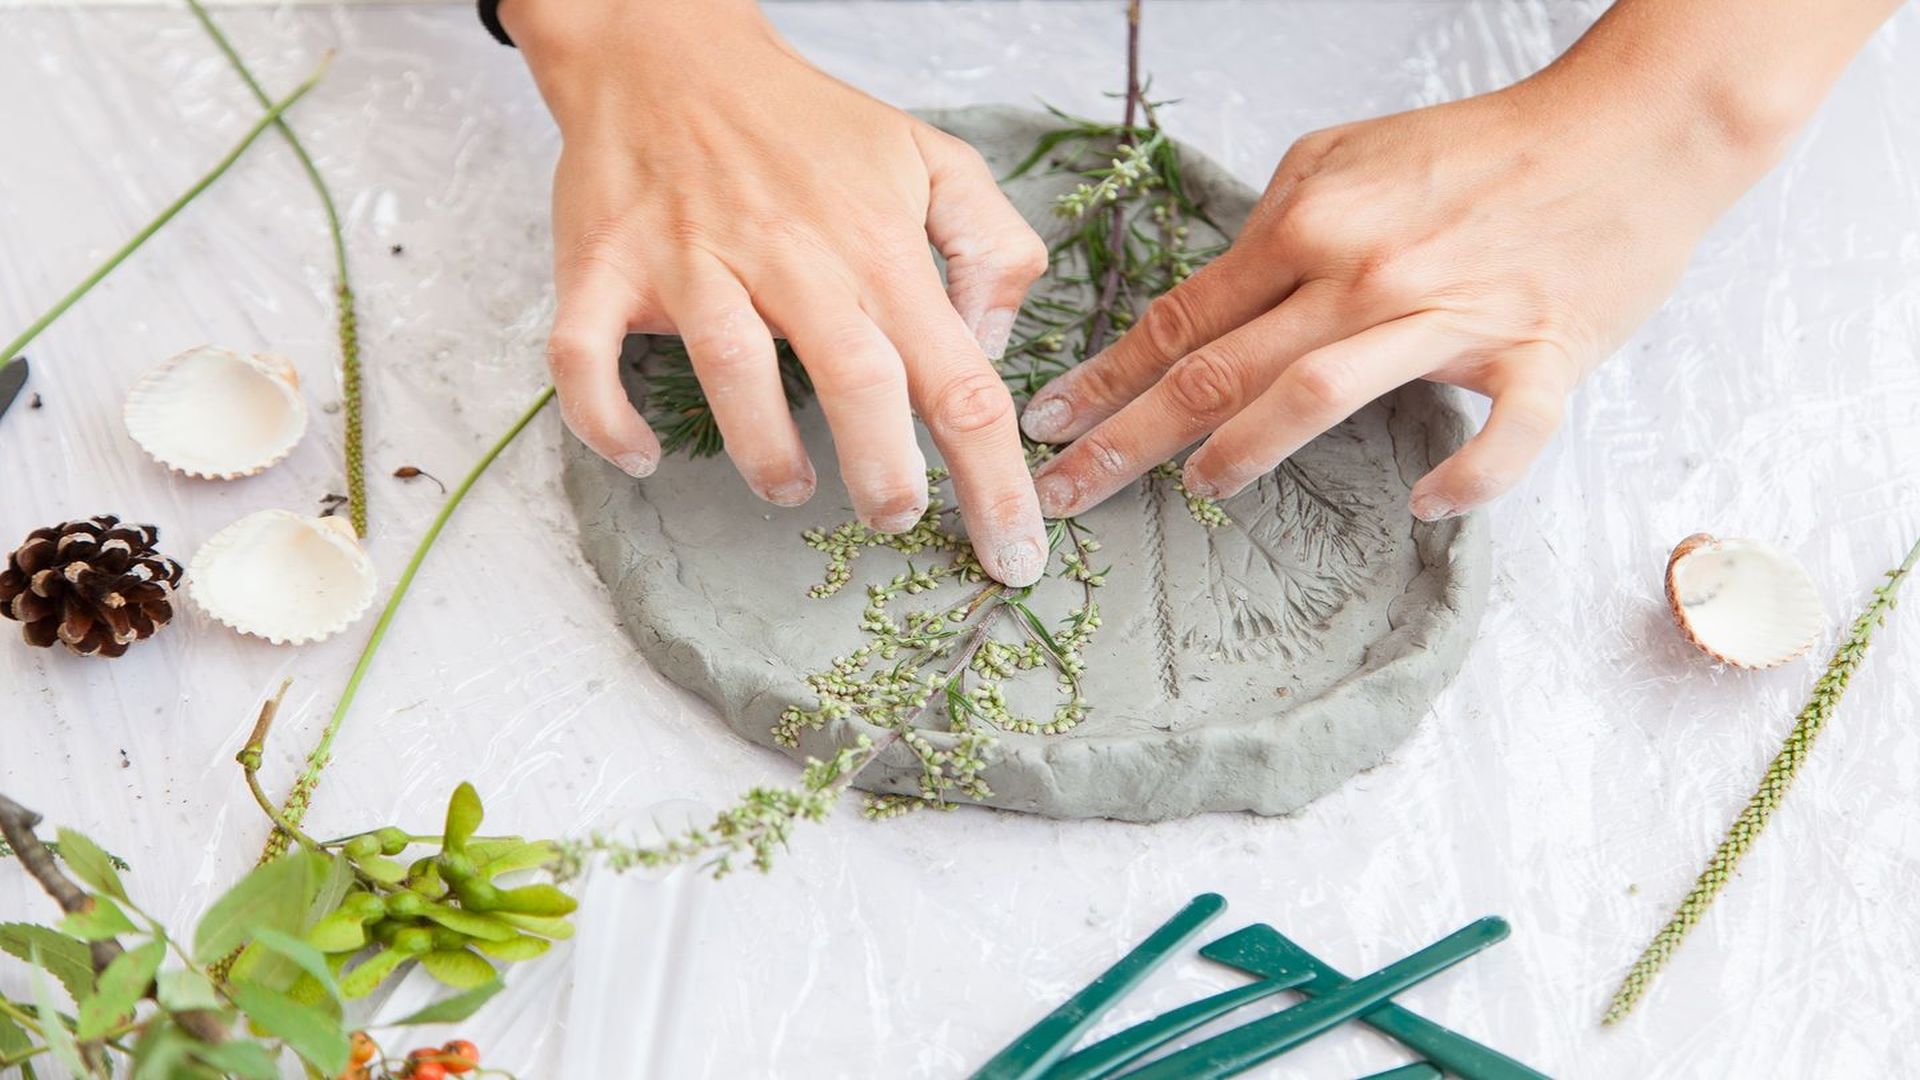 zdjęcie dłoni wykonującej prace plastyczne - odciskujących roślinę w glinie. obok odcisku leżą muszelki, szyszka i inne rośliny